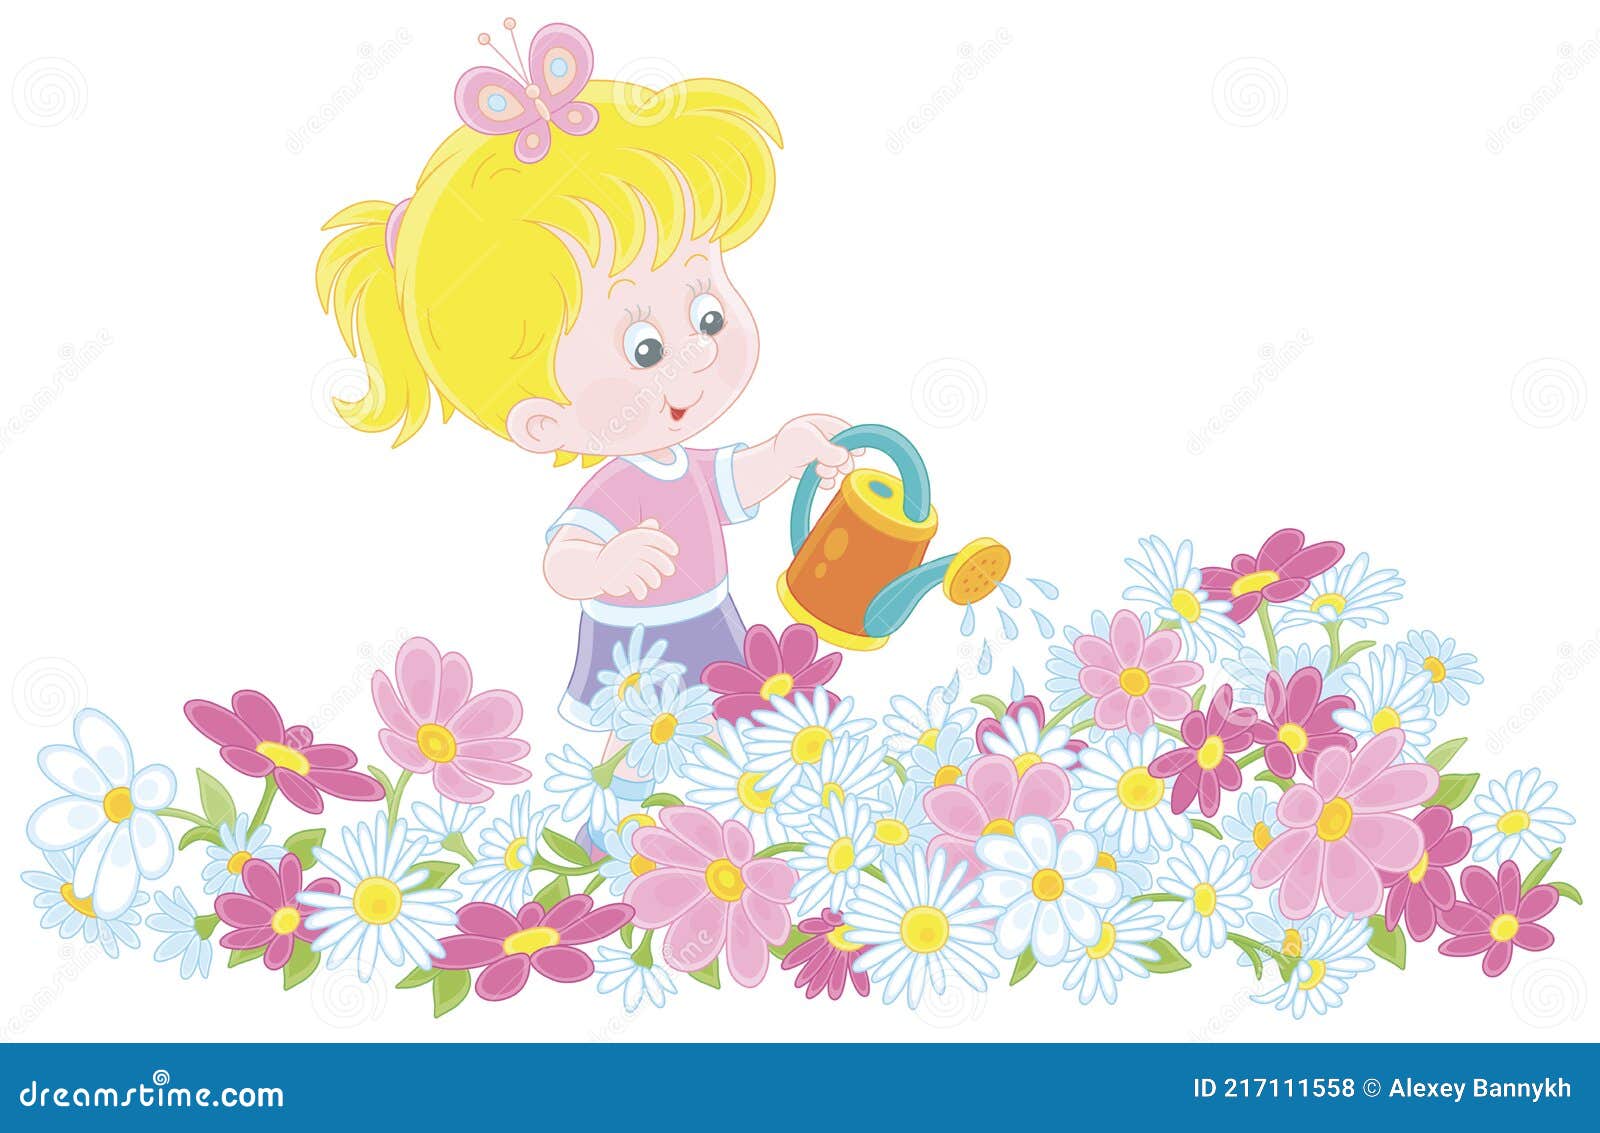 Colorida uma linda ilustração de flor de menina com desenho